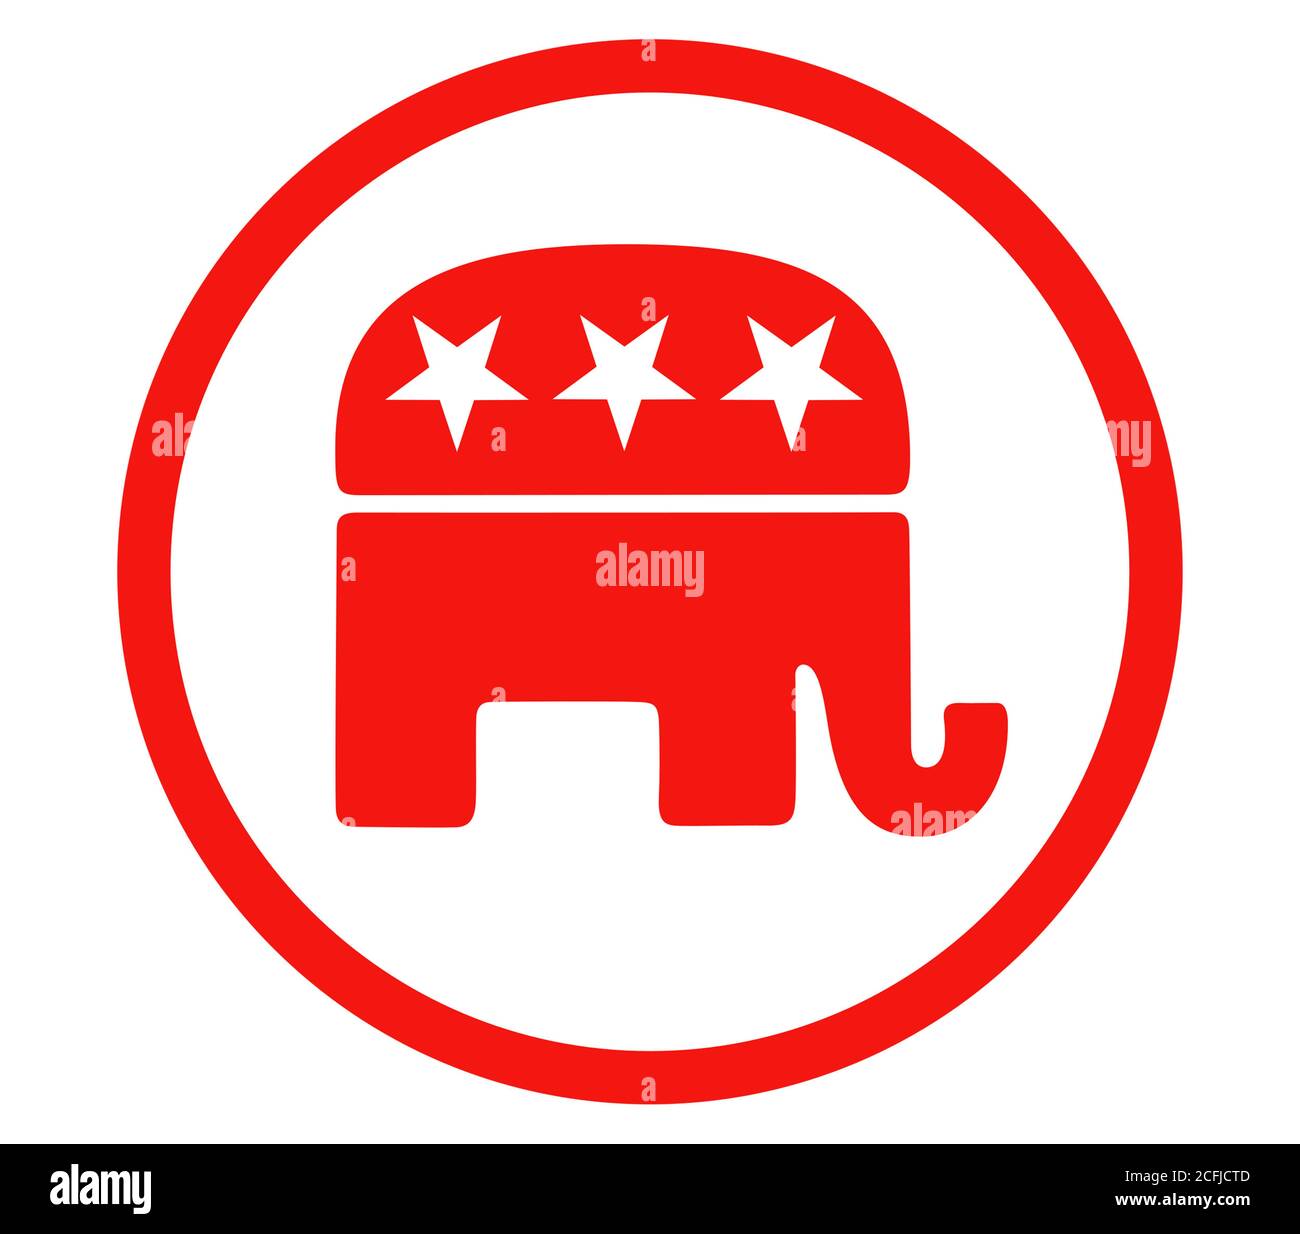 Republican Party logo Stock Photo